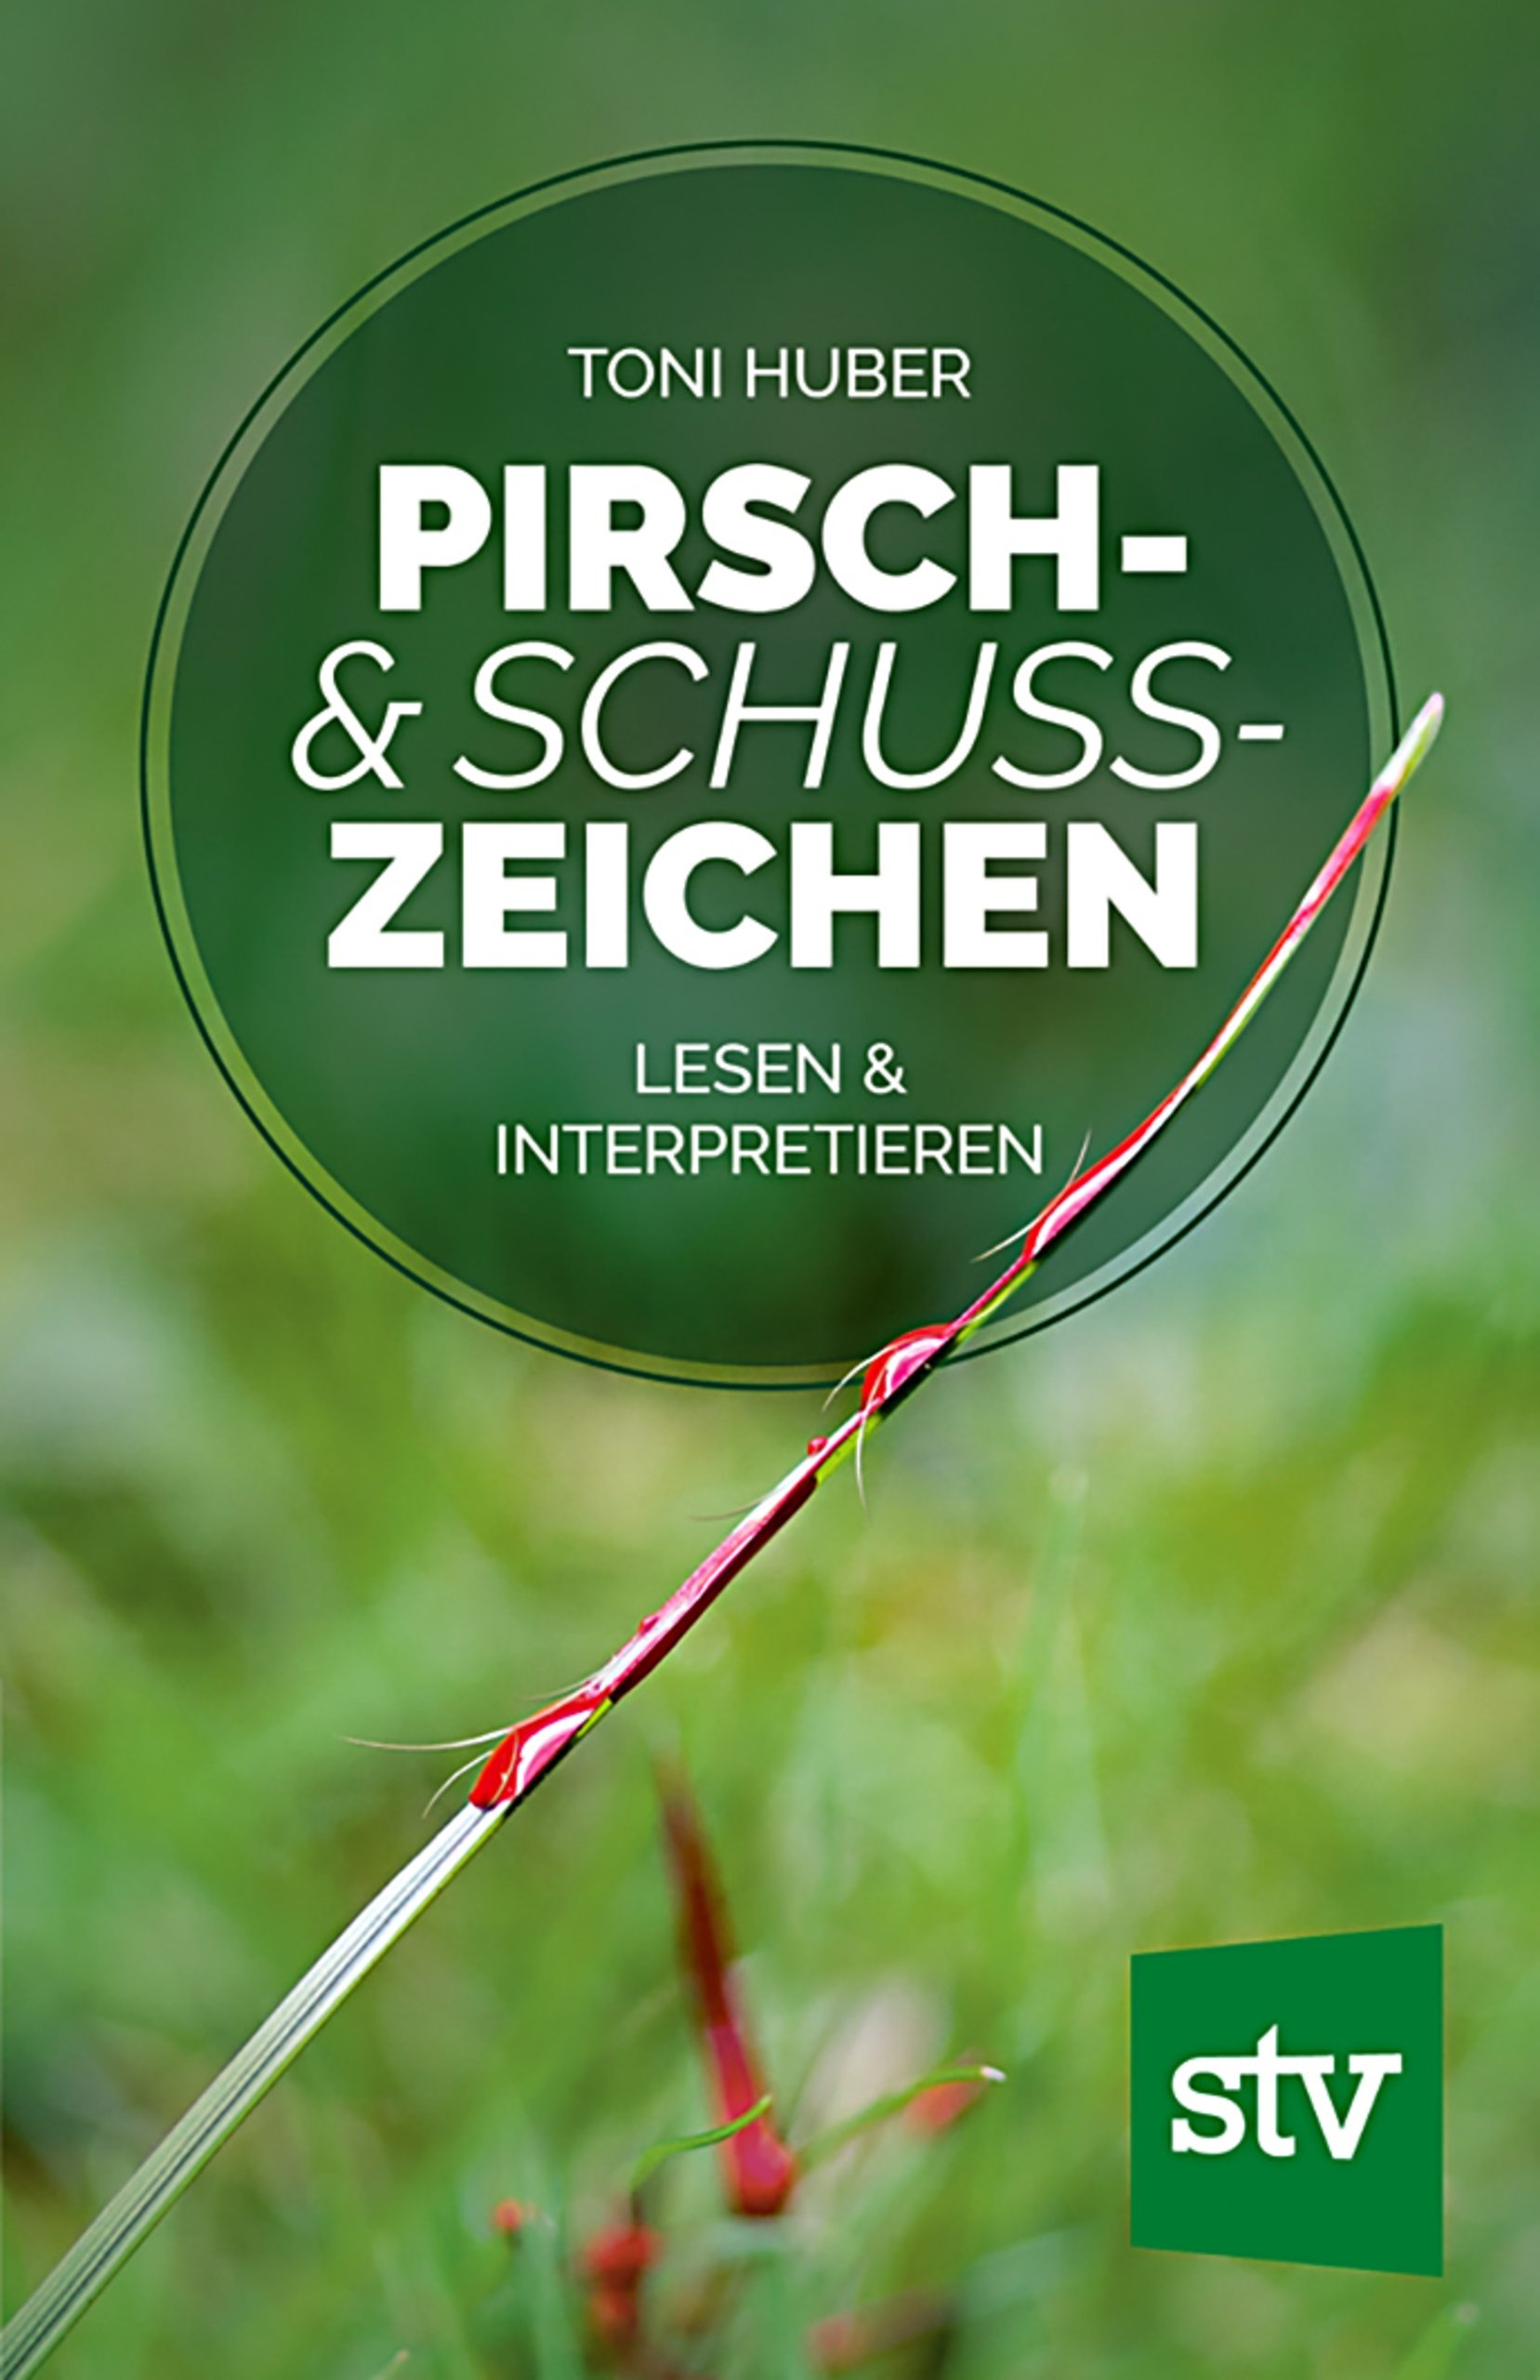 Pirsch- & Schusszeichen lesen und interpretieren